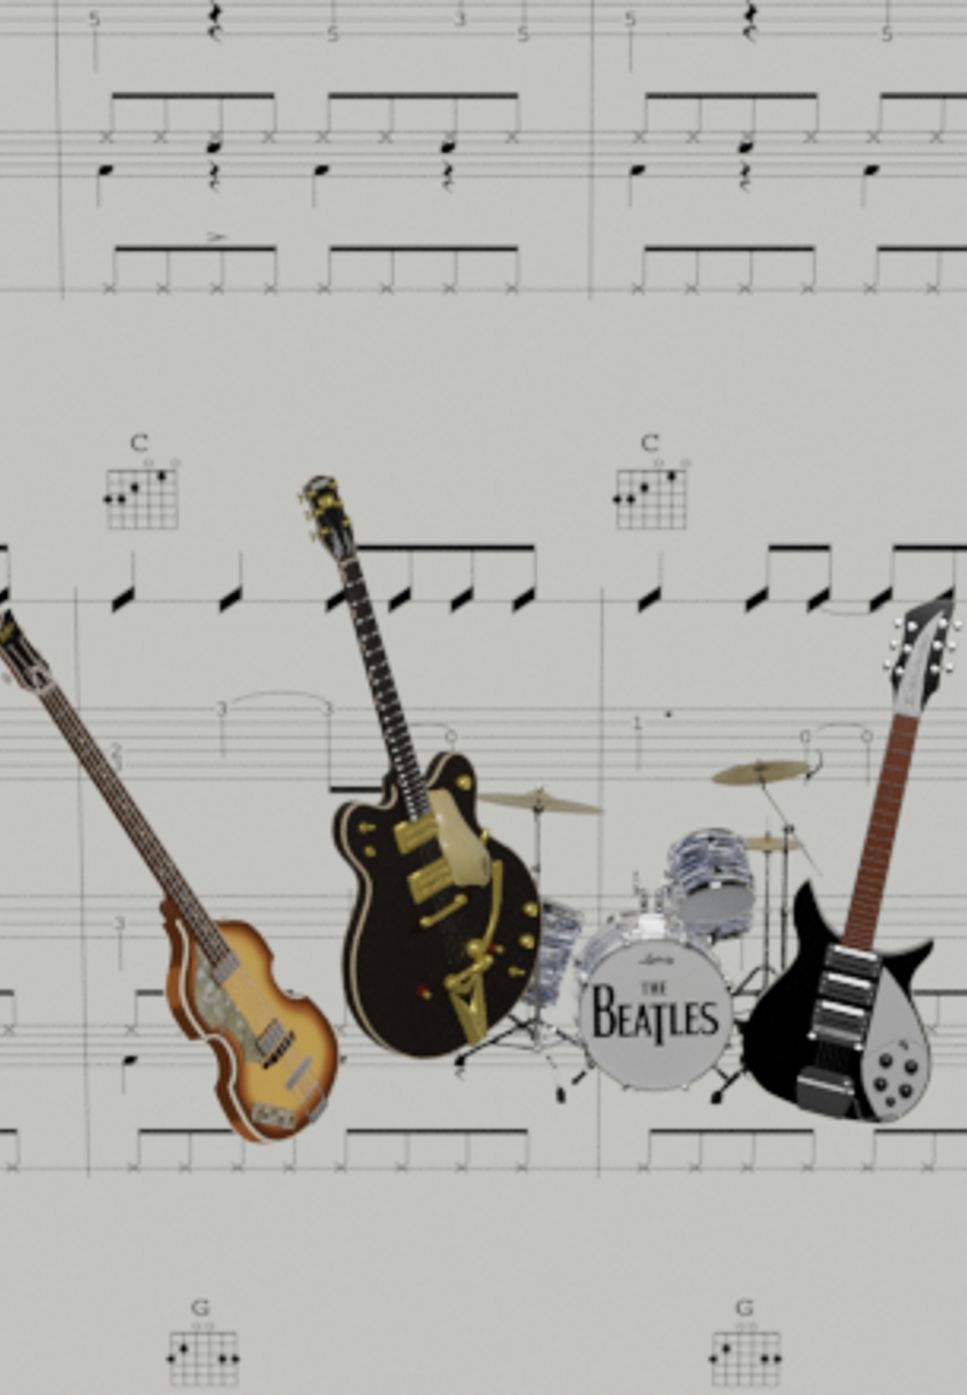 The Beatles - Long Tall Sally (Band Score) by Ryohei Kanayama